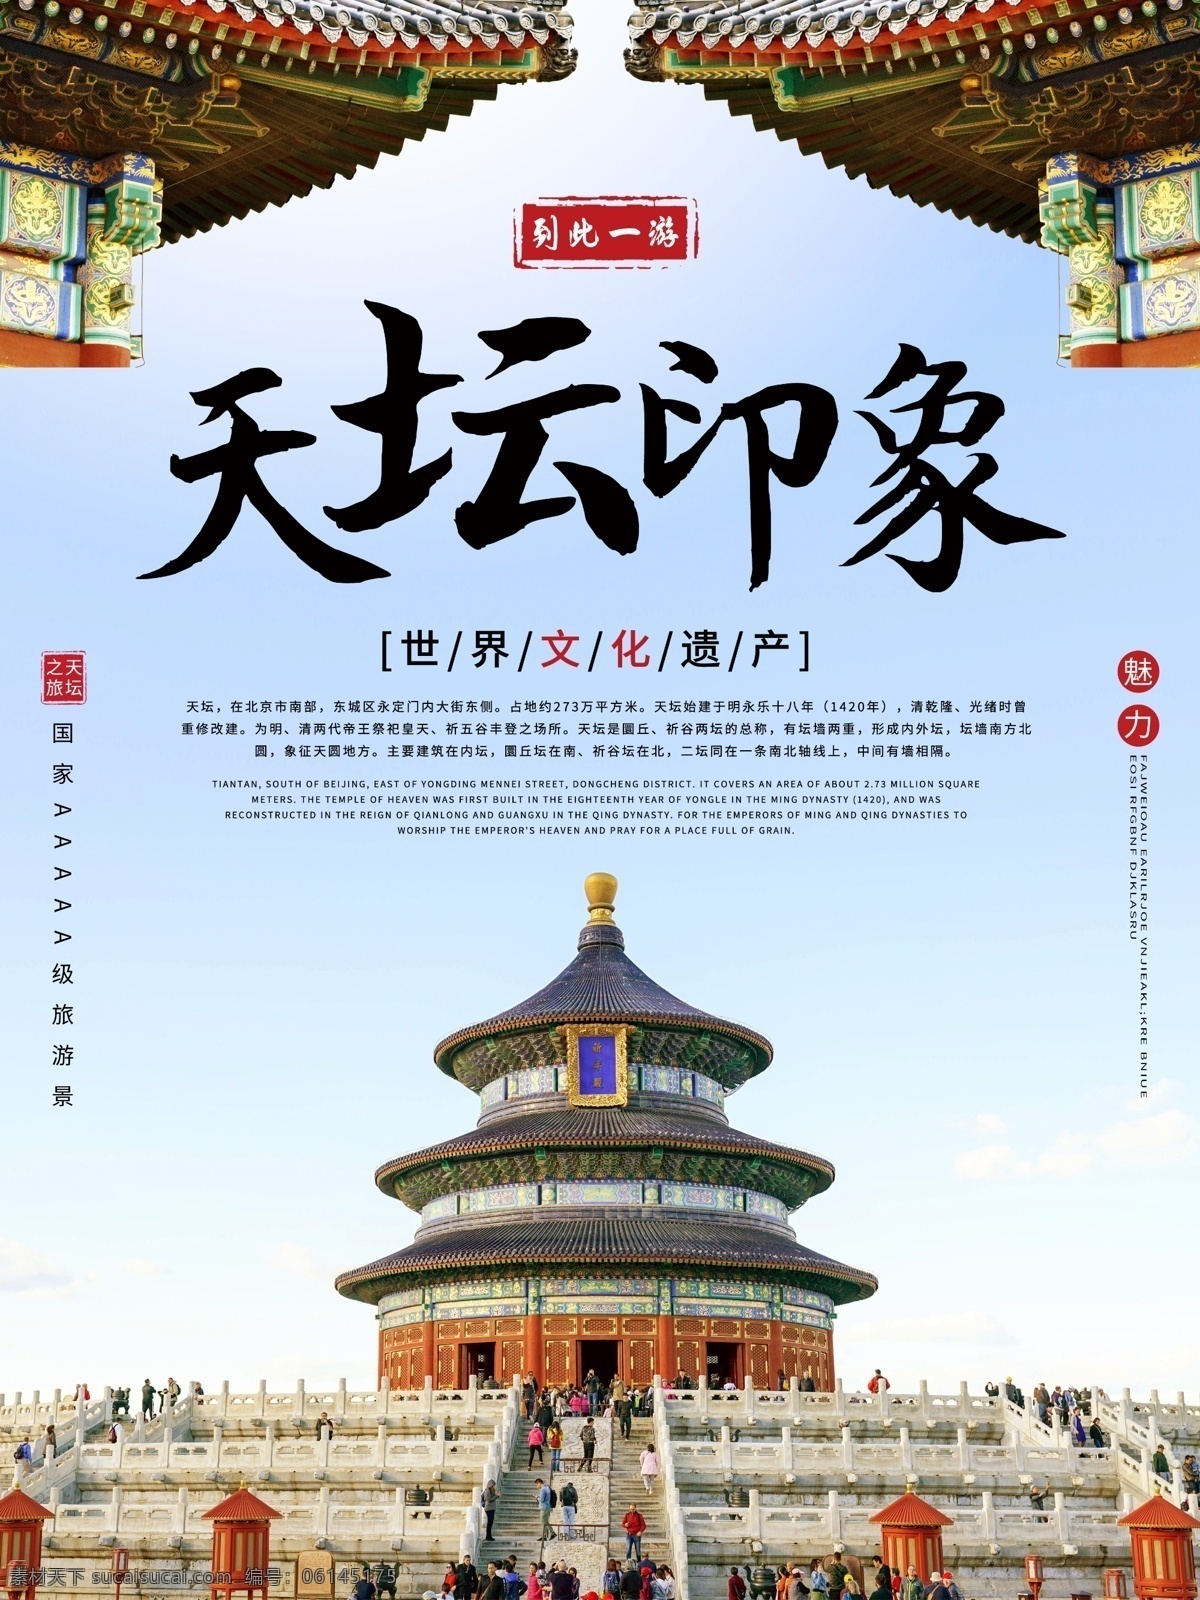 天坛海报设计 天坛 天坛印象 旅游海报 北京旅游 中国印象 分层